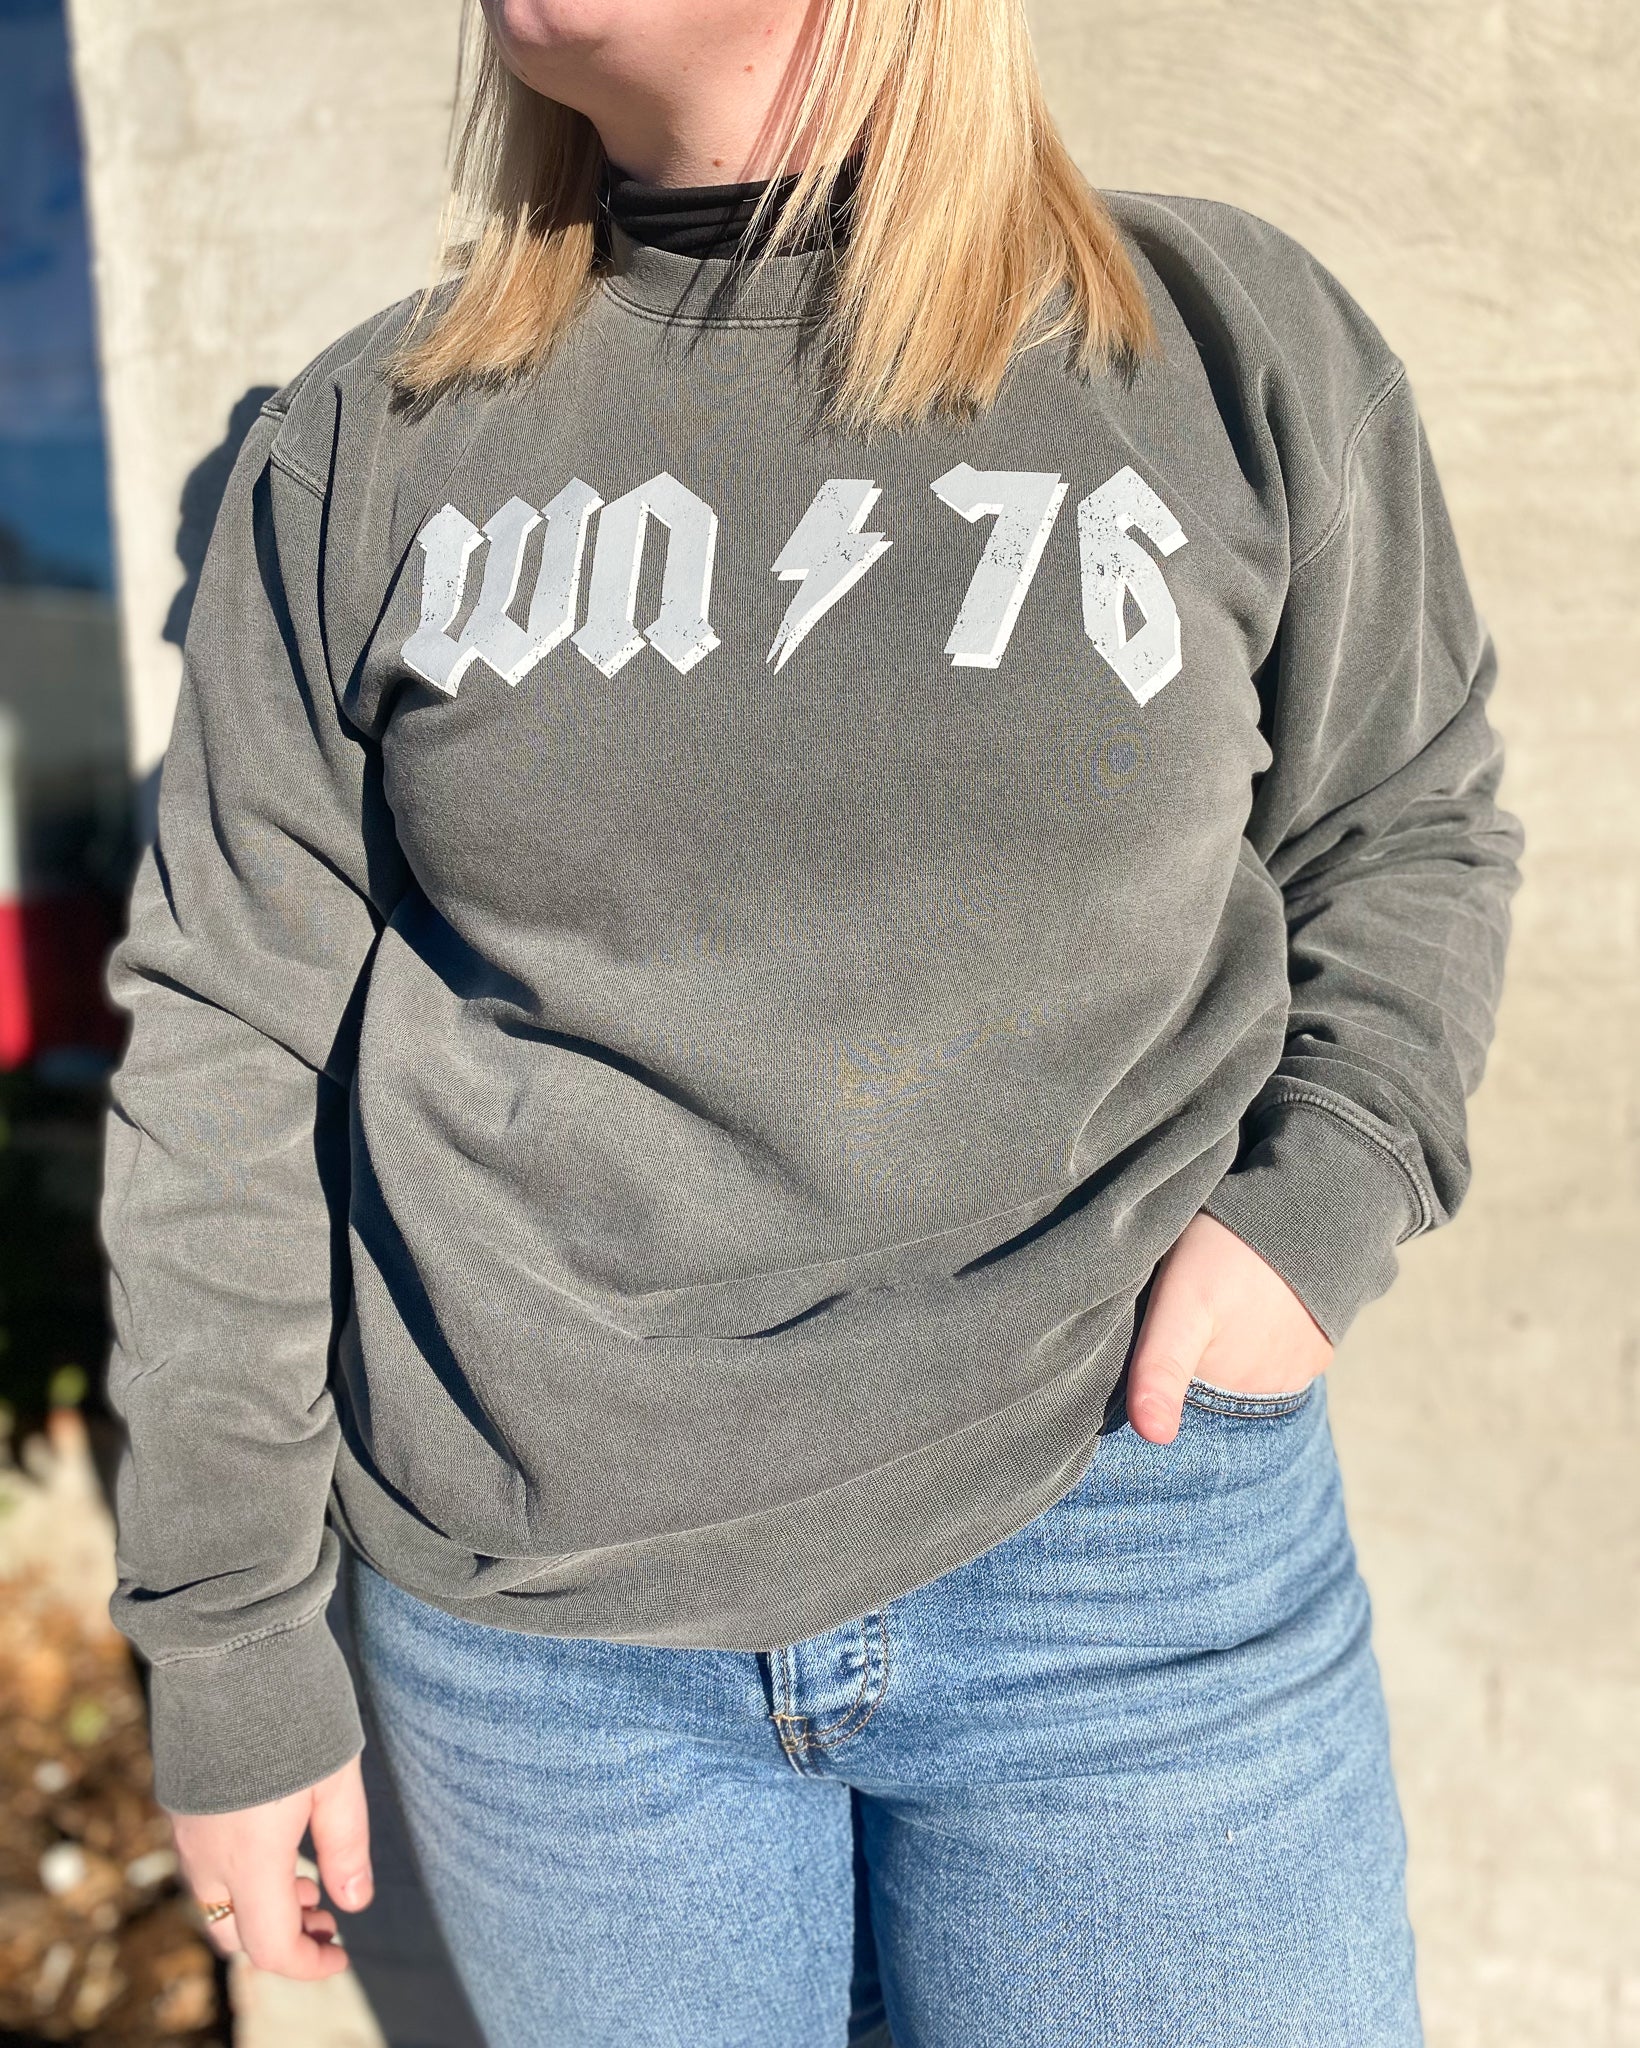 WN-76 Groupie Sweatshirt